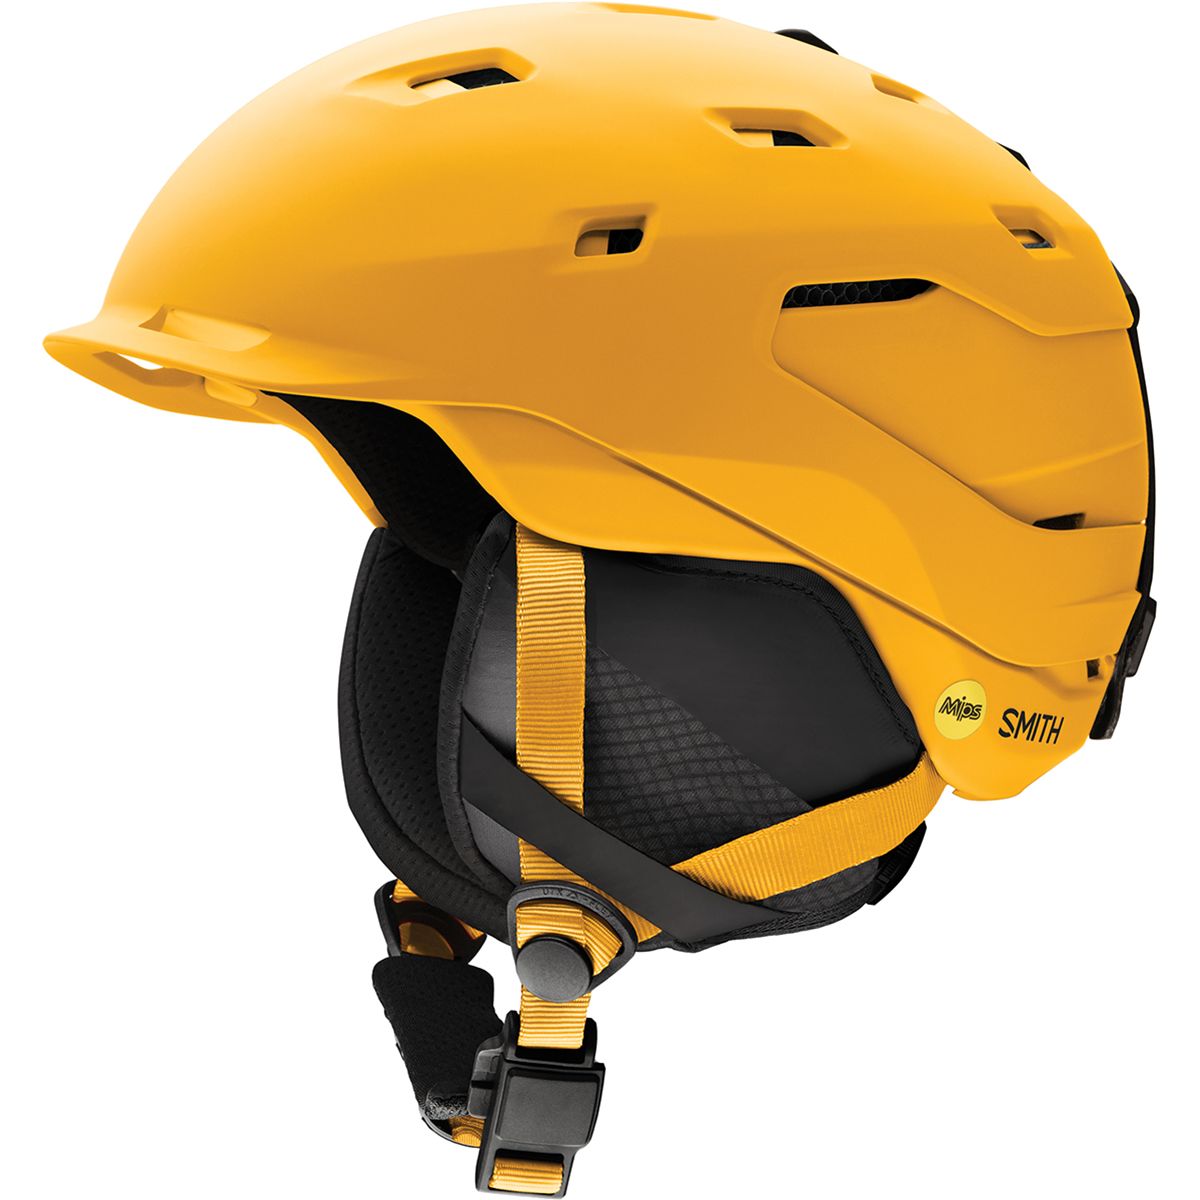 Smith 2019 Mens Variance Ski Helmet Matte Rise//Oxide